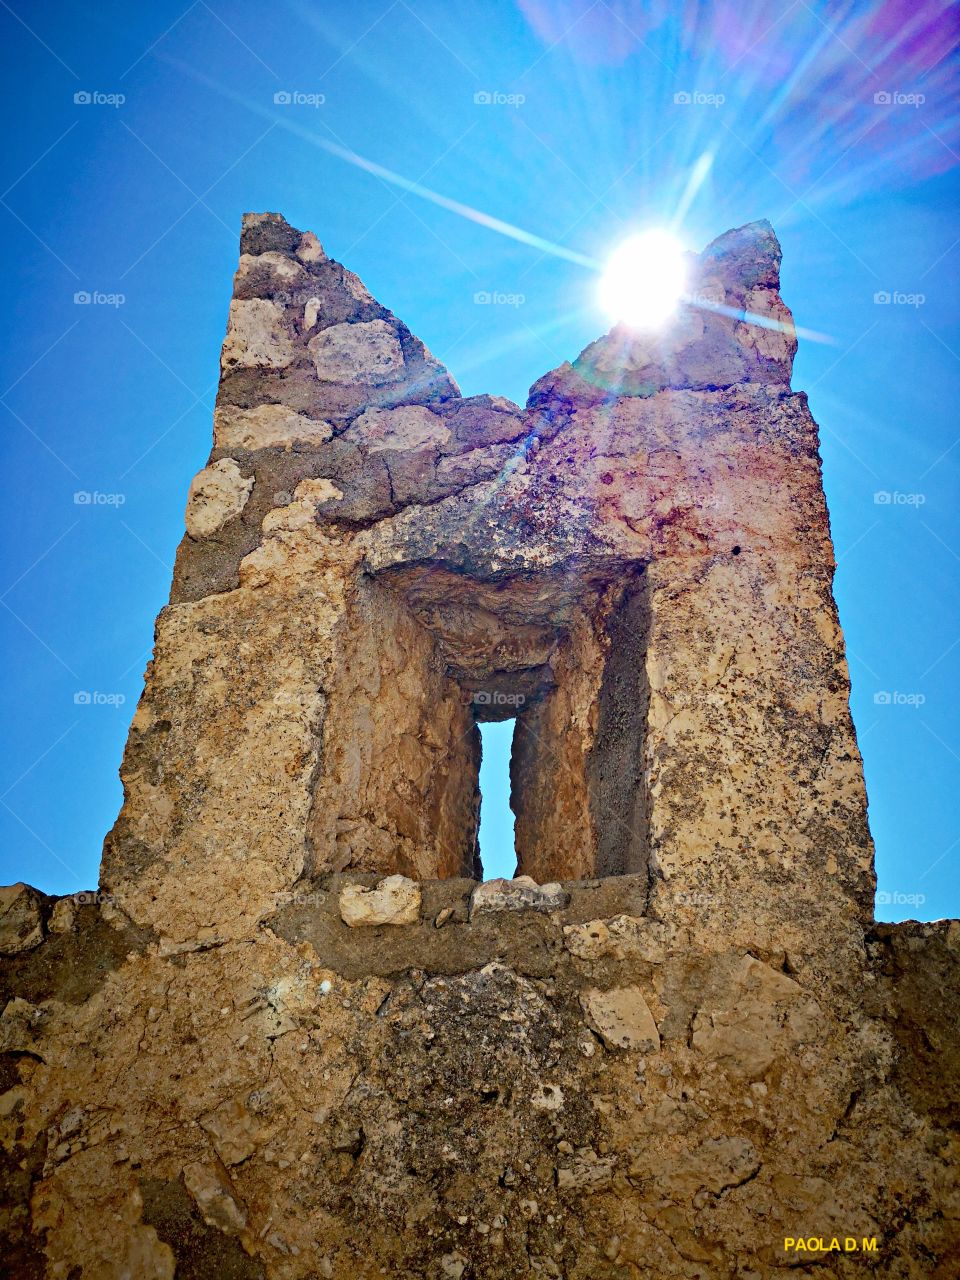 Rocca Calascio è una rocca situata in Abruzzo, in provincia dell'Aquila, nel territorio del comune di Calascio, ad un'altitudine di 1450 metri s.l.m, poco sopra il paese. 